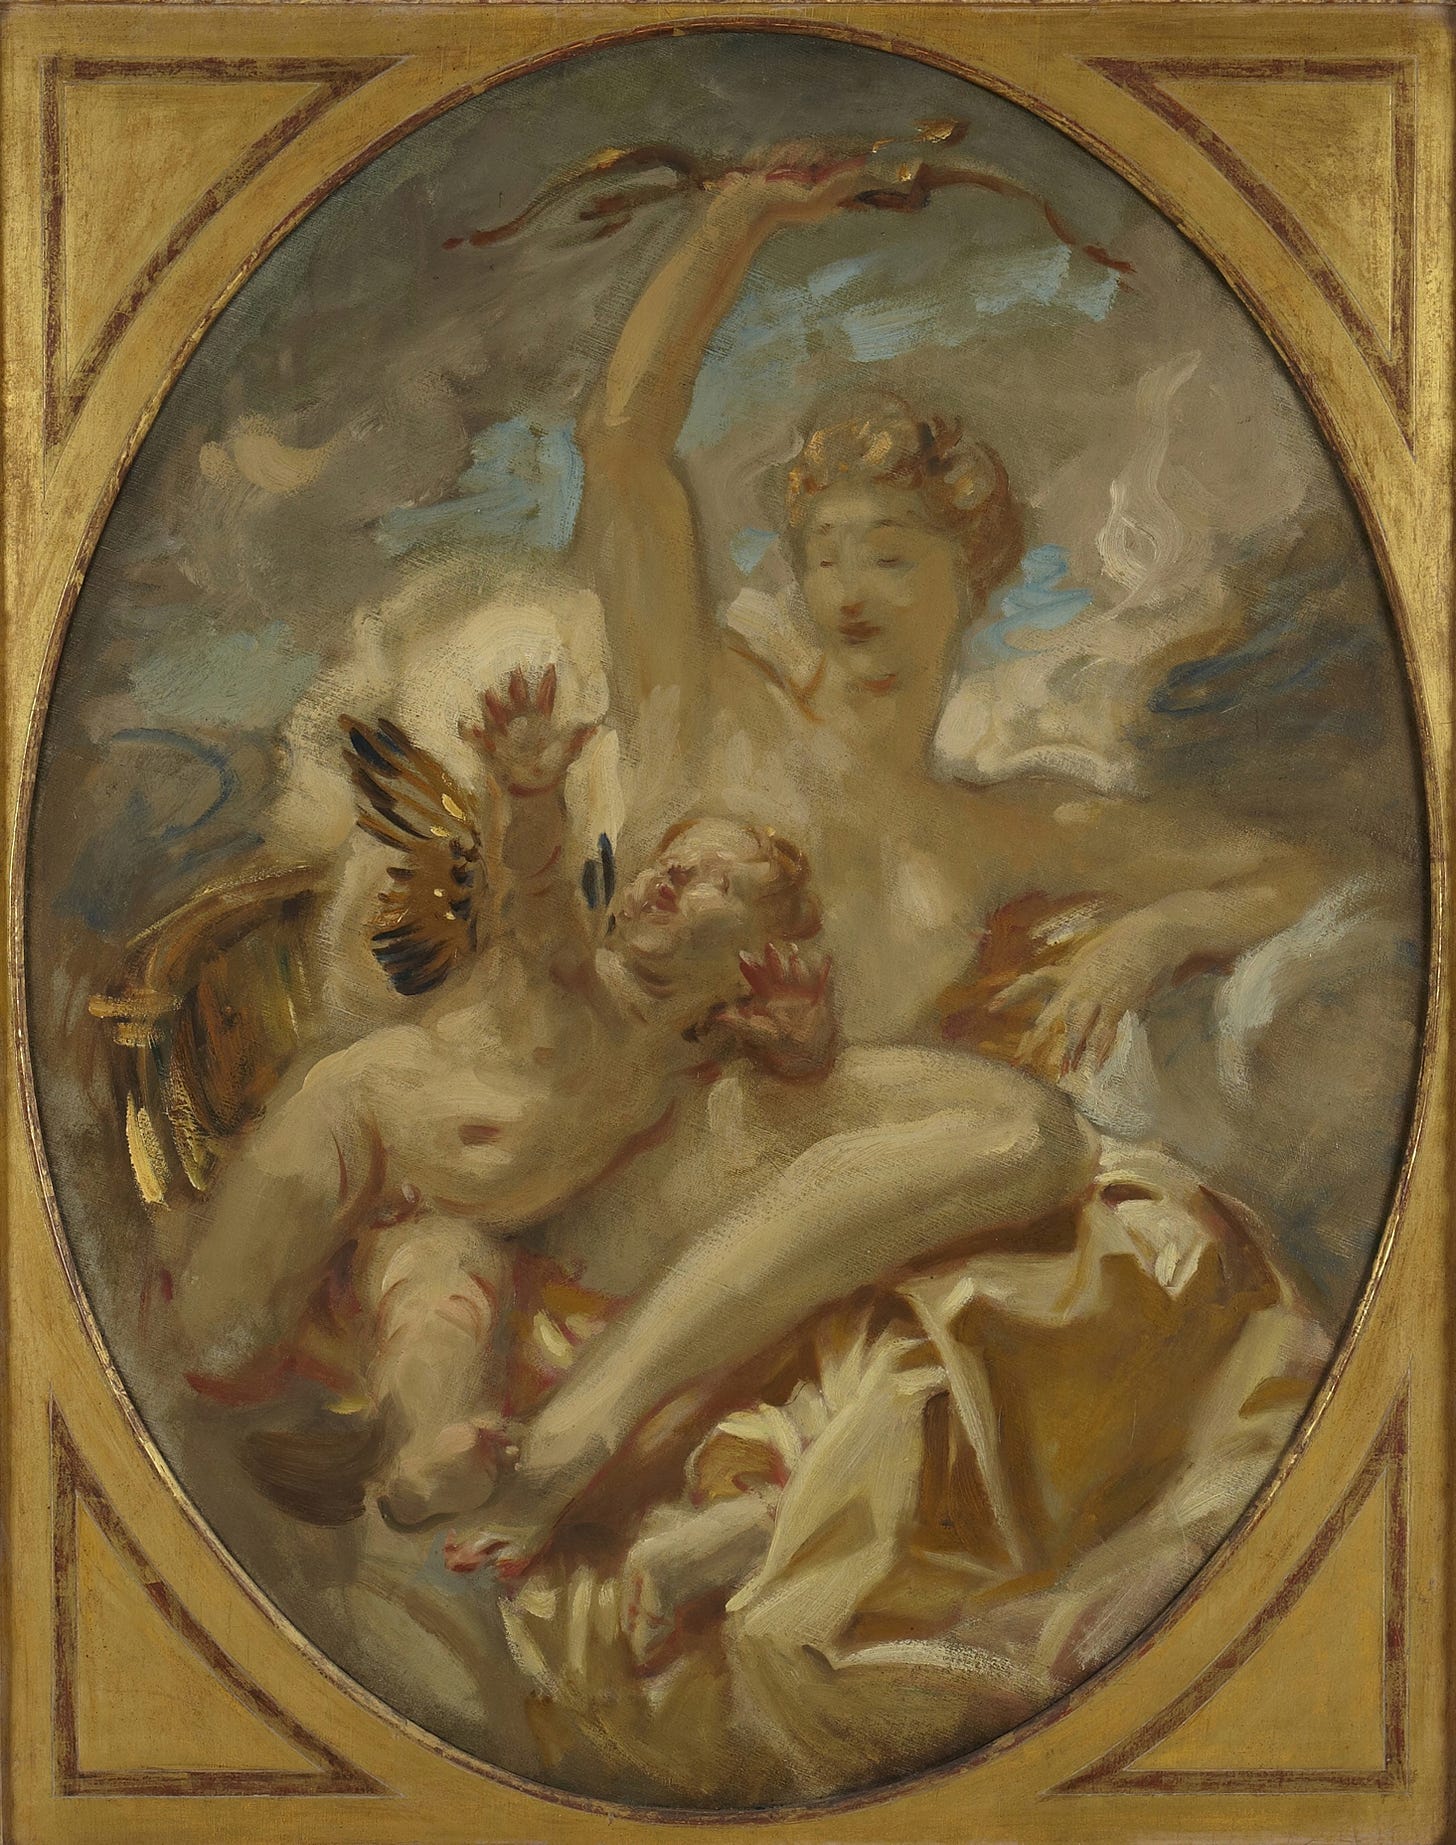 Venus and Cupid (ca. 1915)